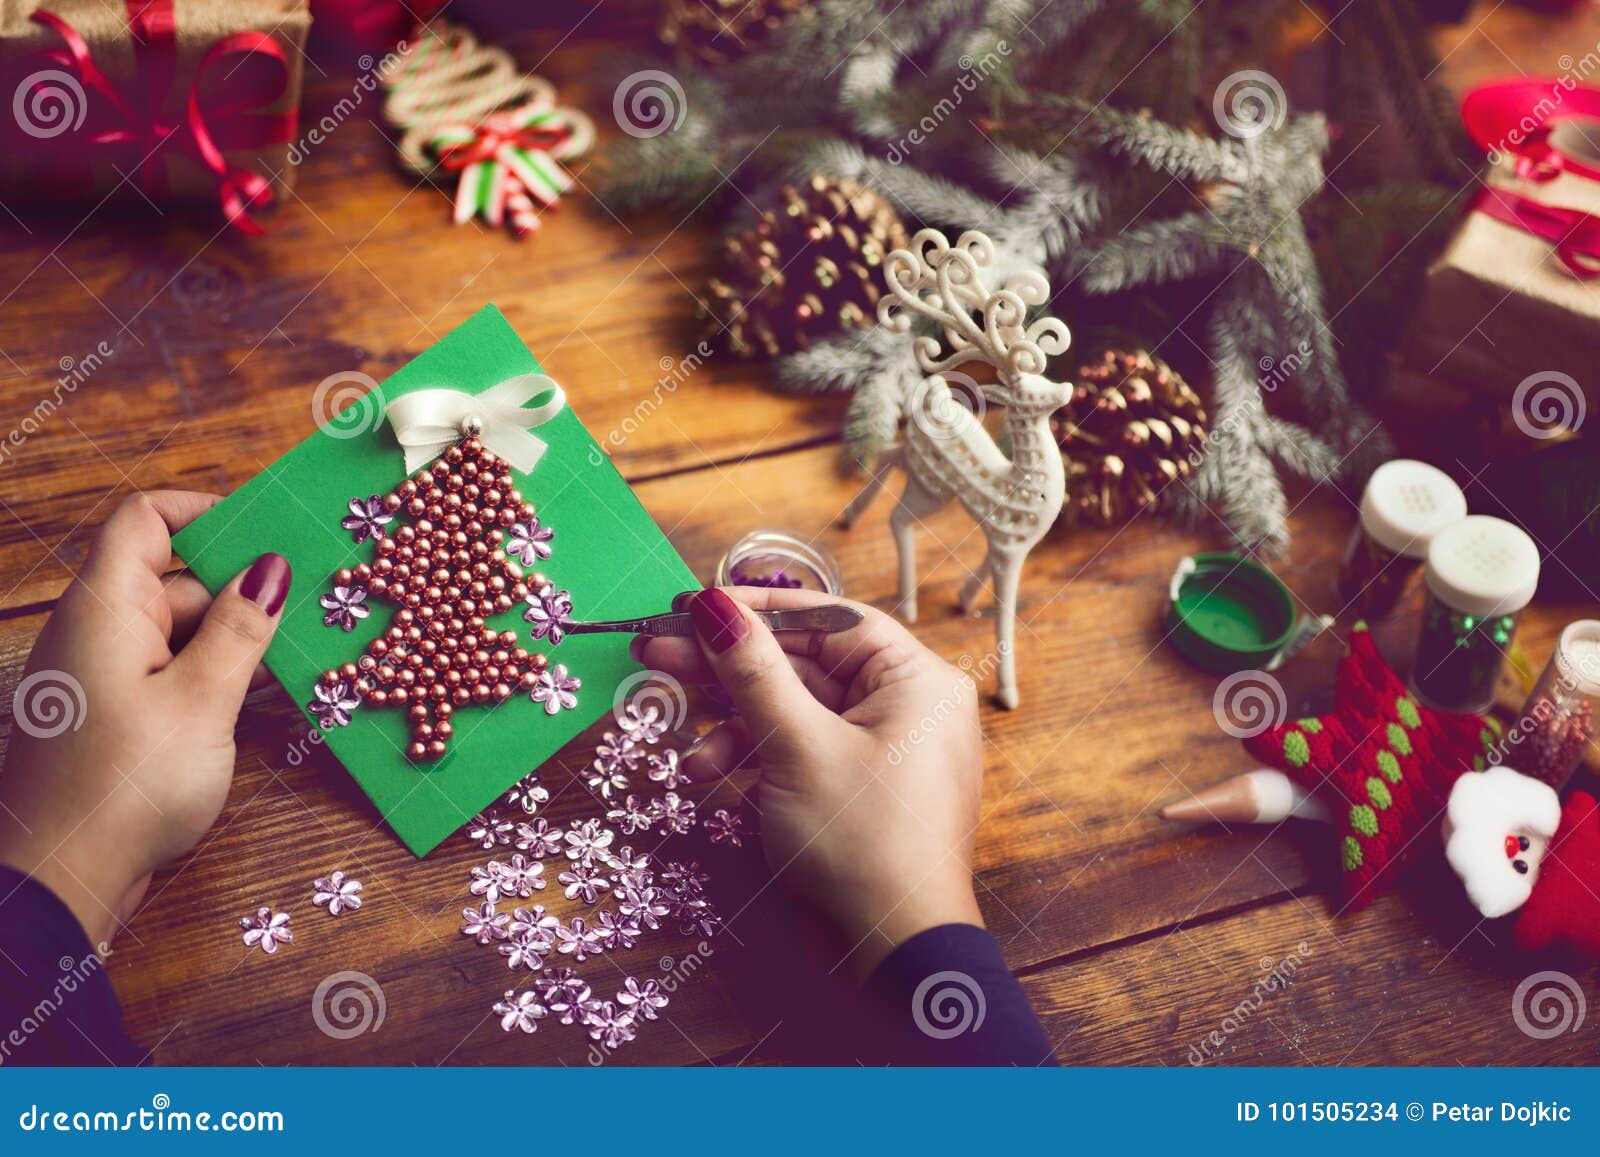 装饰圣诞节礼物和装饰的妇女的手. 手工制造新年` s或圣诞节礼物和装饰与葡萄酒作用